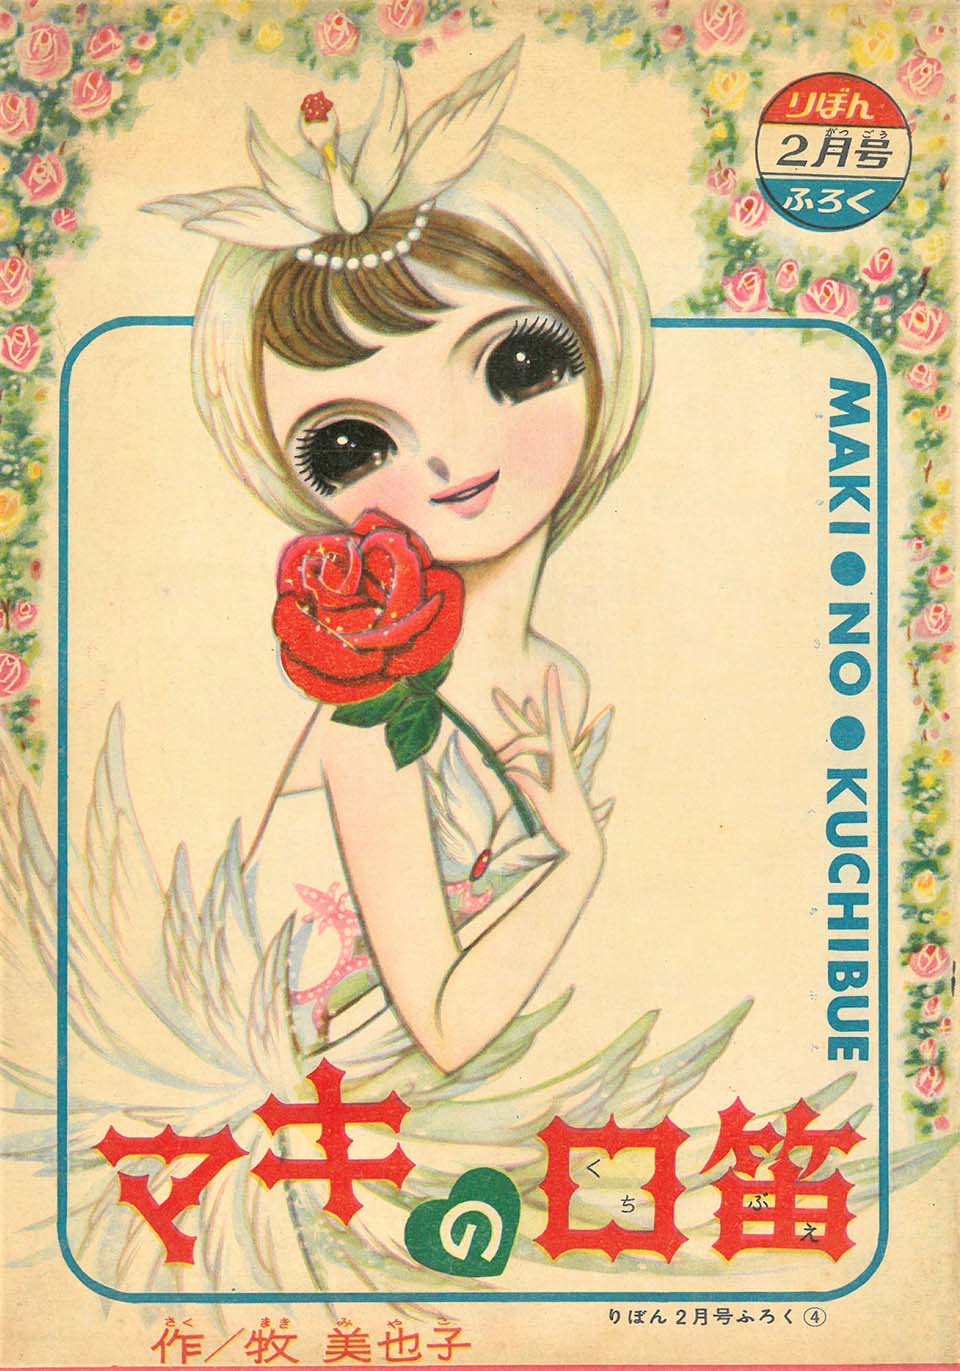 牧美也子「マキの口笛」『りぼん』1962年2月号ふろく